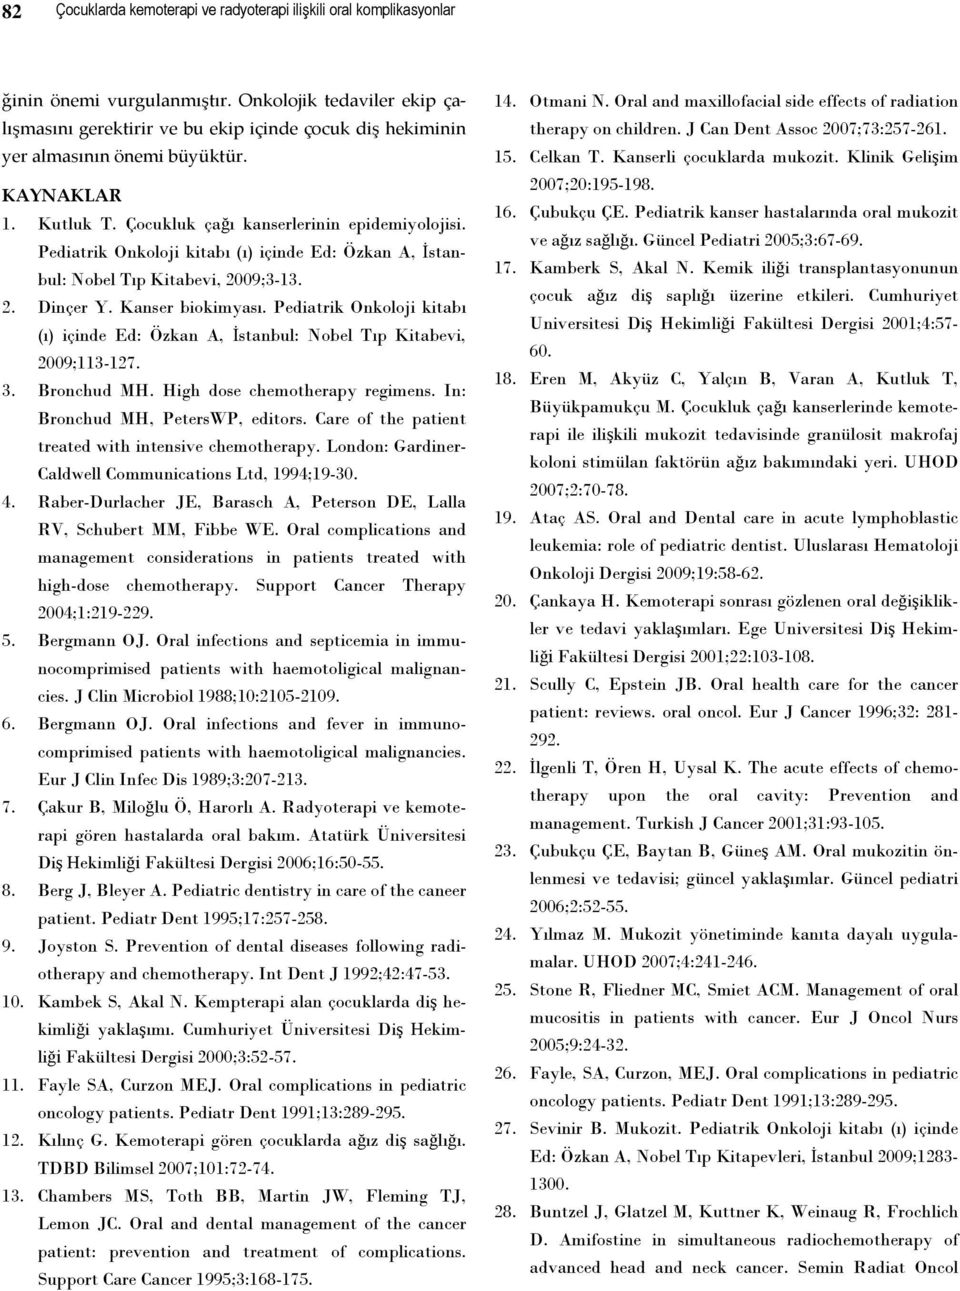 Pediatrik Onkoloji kitabı (ı) içinde Ed: Özkan A, İstanbul: Nobel Tıp Kitabevi, 2009;3-13. 2. Dinçer Y. Kanser biokimyası.